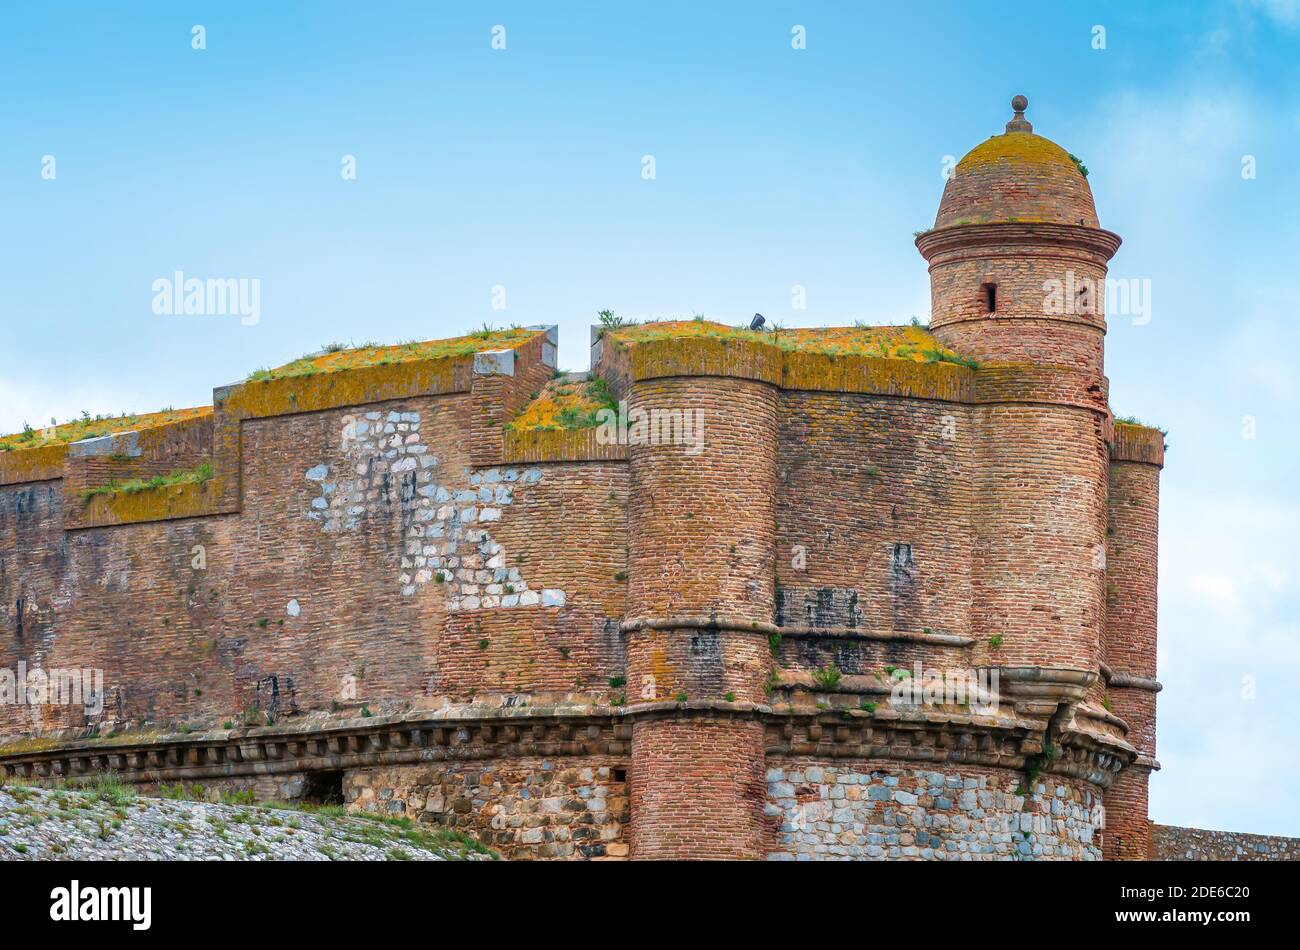 La forteresse de Salses est un ouvrage militaire construit entre 1497 et 1502 par les rois catholiques espagnols. Foto Stock